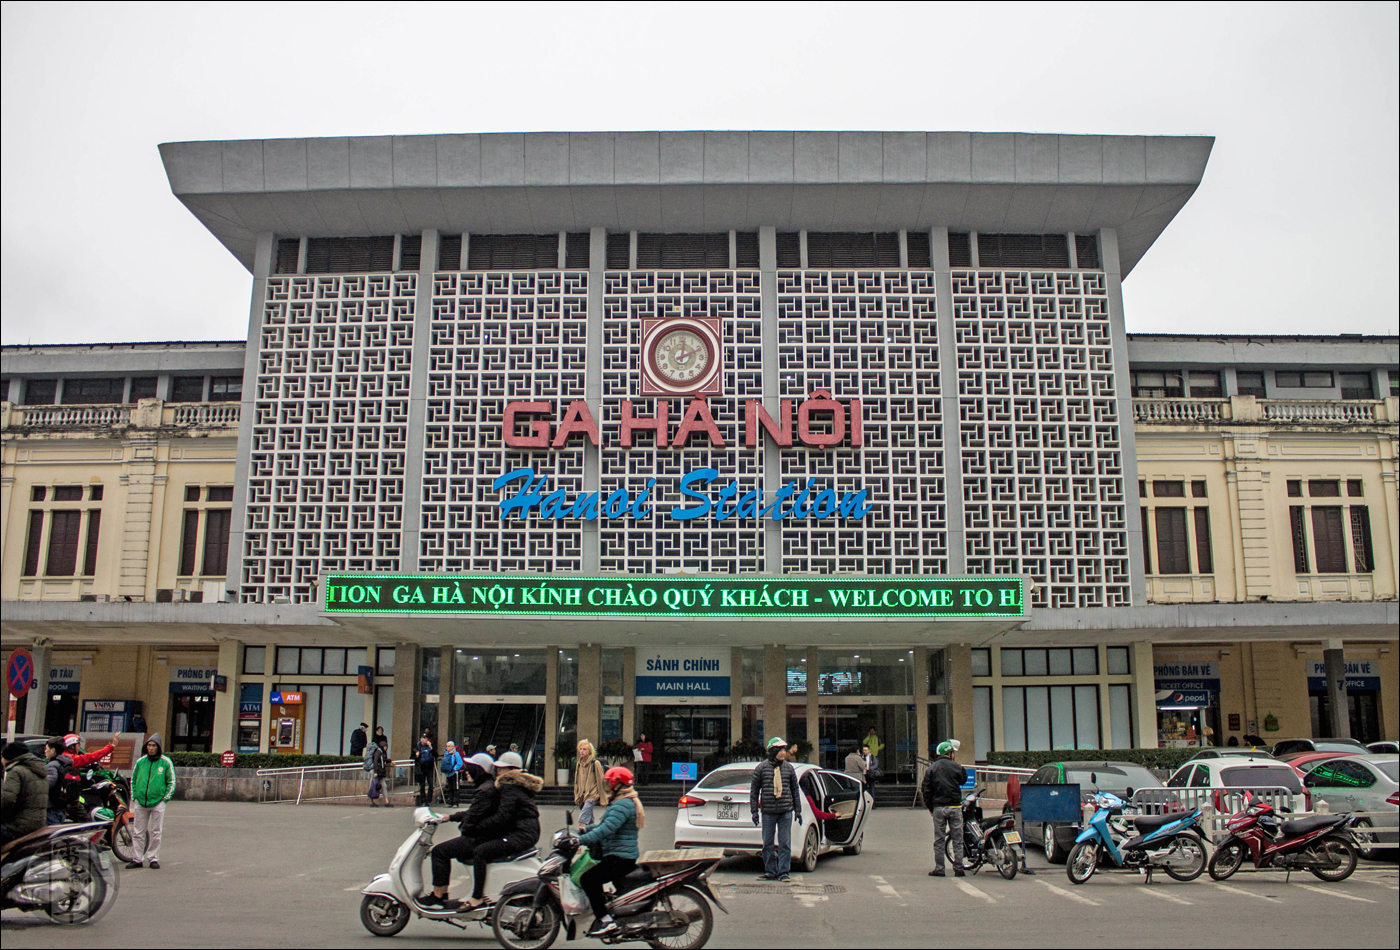 Hanoi pályaudvarának 1976-ban átadott, modern stílusú központi épülete. Az 1902-ben átadott eredeti épület 1972-ben, a vietanmi háború során pusztult el, a jobb és bal oldalon található épületszárnyak azonban jobbára sértetlenek maradtak.